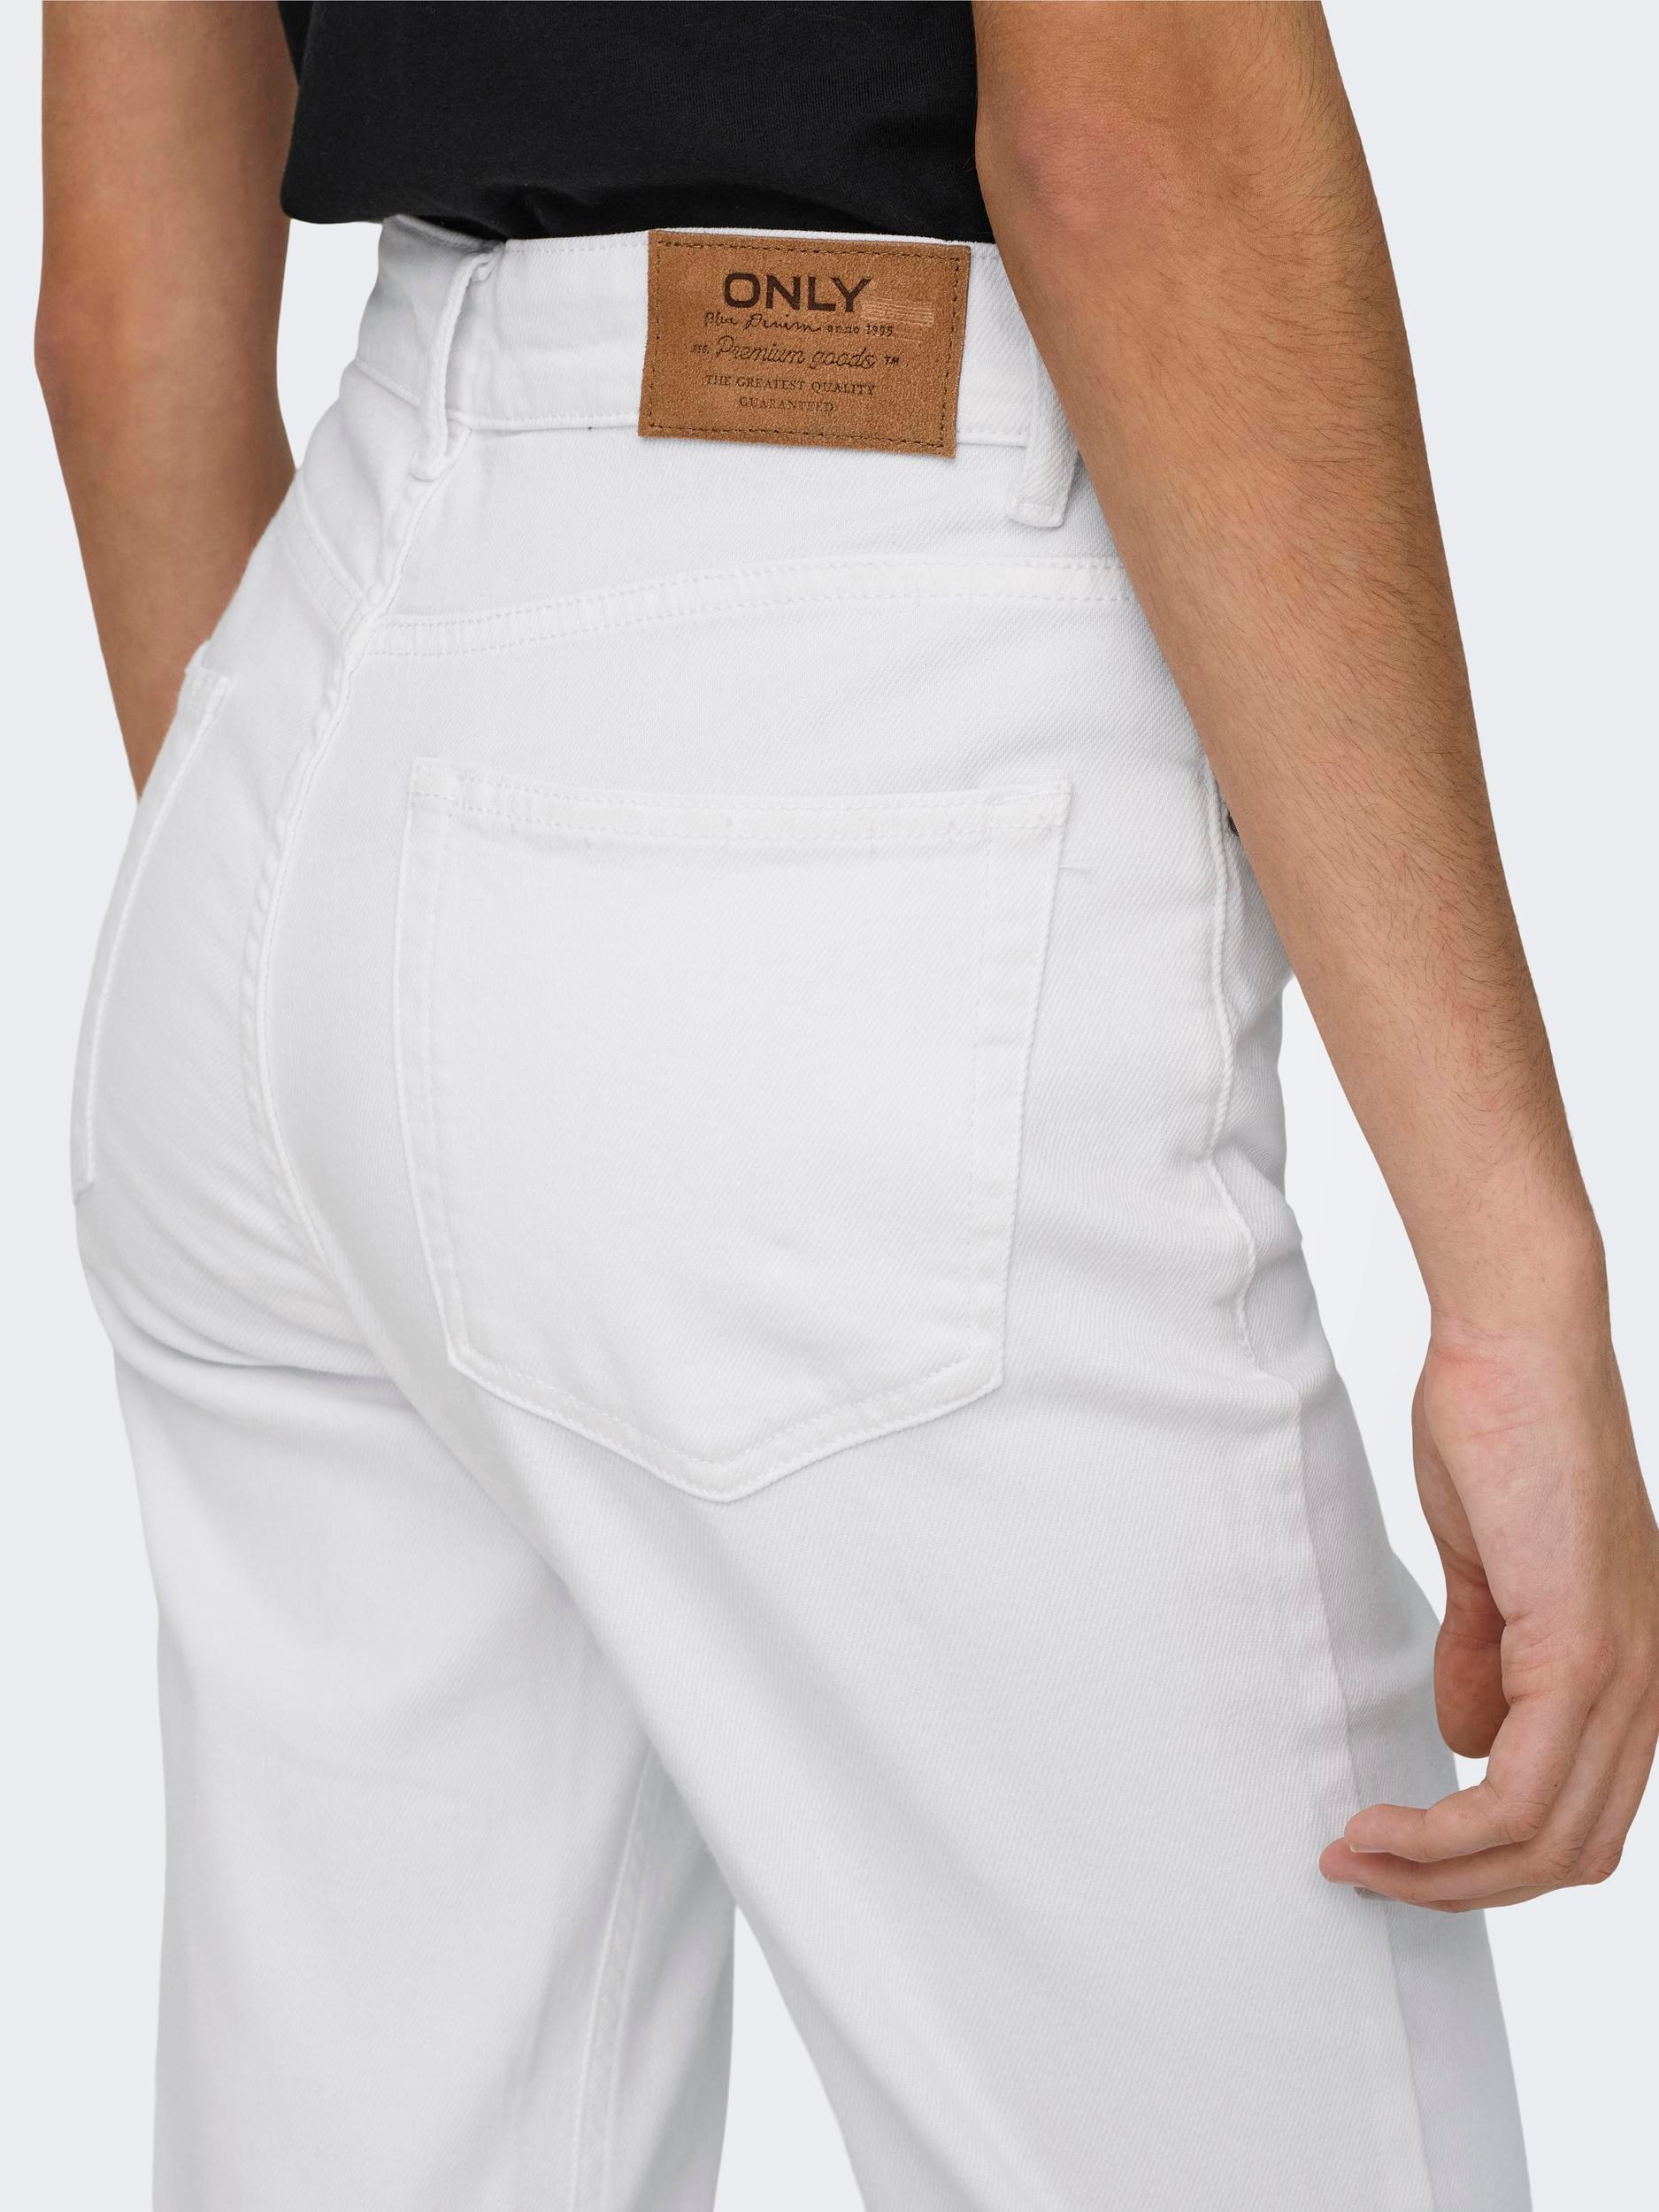 ONLY Bootcut-Jeans »ONLEVERLY MW SWEET FLARED DNM CRO187«, (Flared Jeans, Schlagjeans, ausgestellte Beinform, normale Leibhöhe), Baumwollmischung mit Stretch sorgt für ein angenehmes Tragegefühl